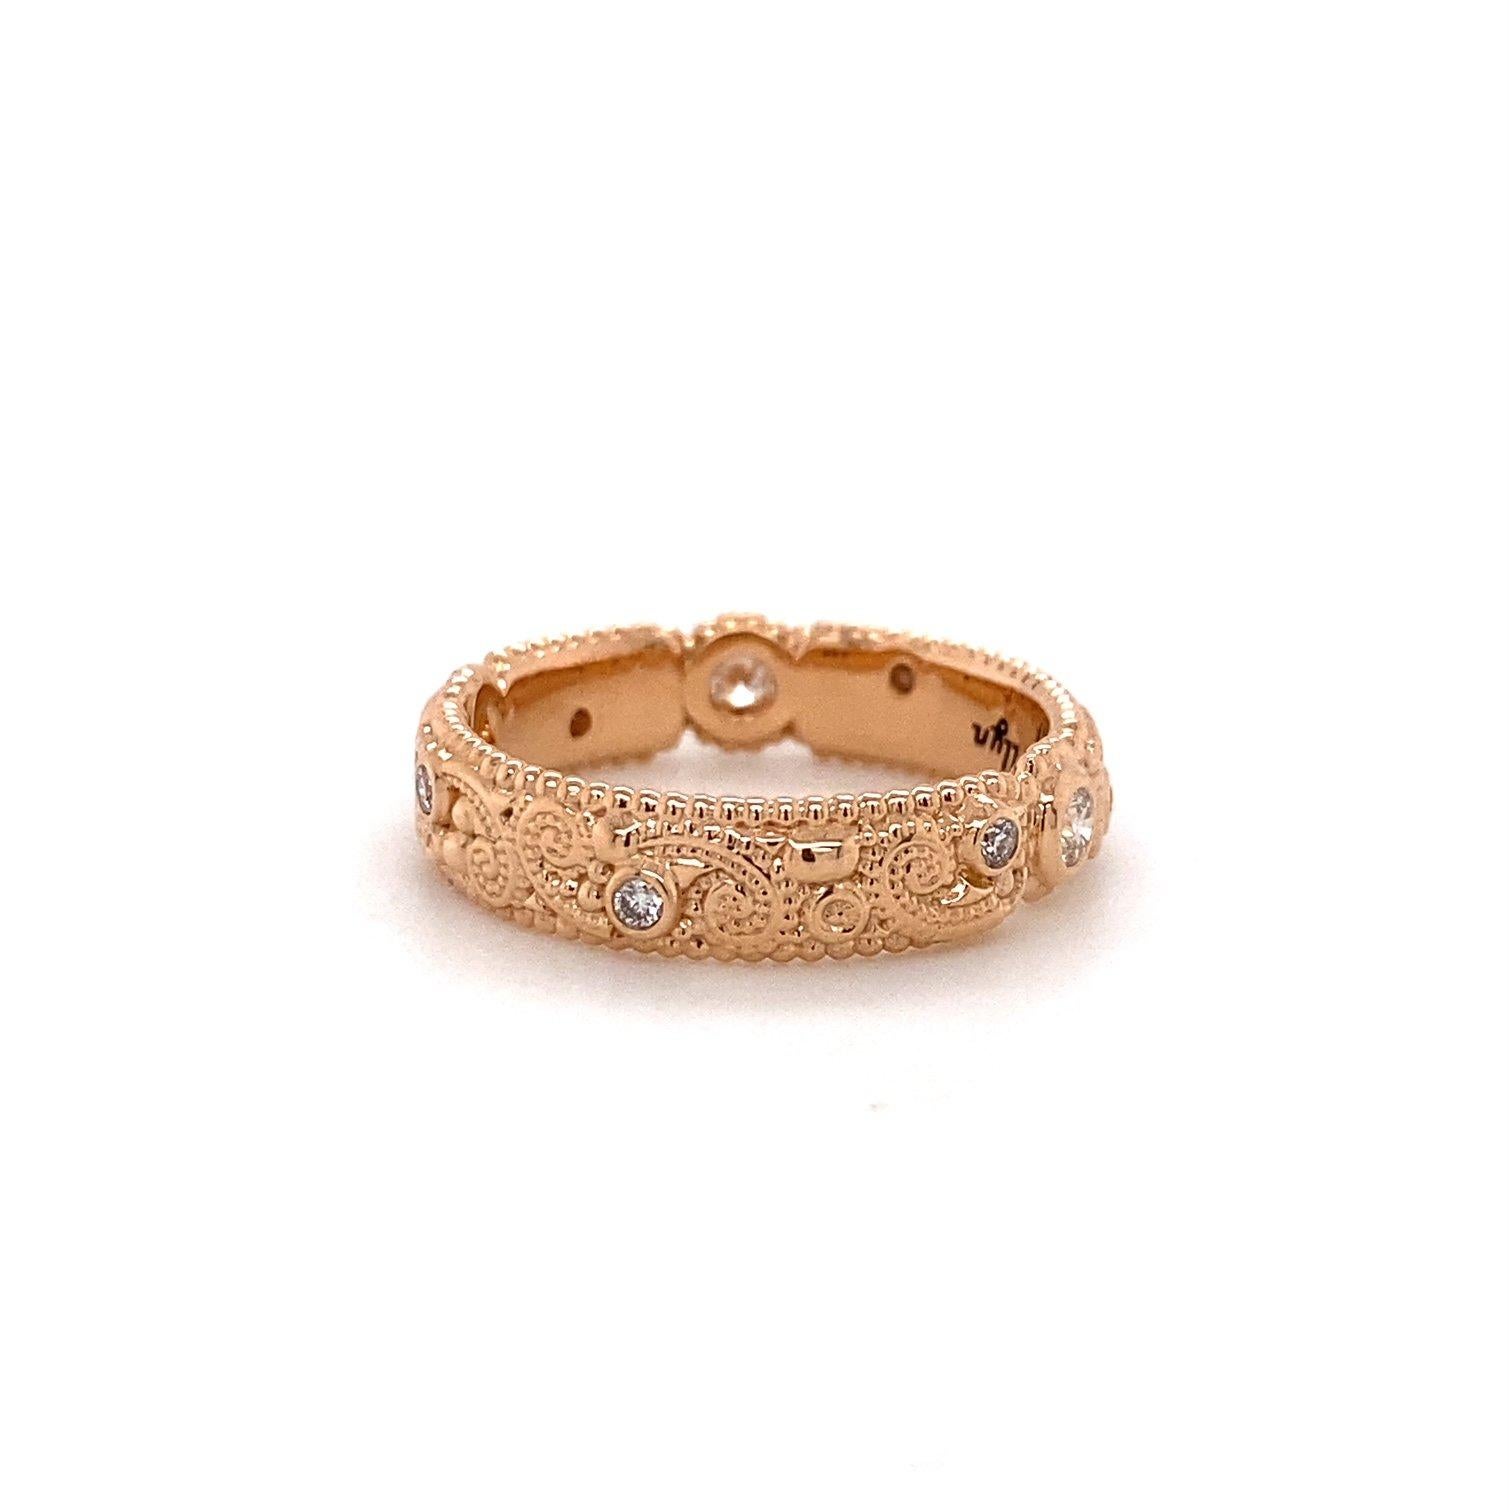 Ein Llyn-Band aus 18 Karat Roségold, besetzt mit runden champagnerfarbenen Diamanten von 0,27 Karat. Dieser Ring wurde von llyn strong hergestellt und entworfen. Ring Größe 7.